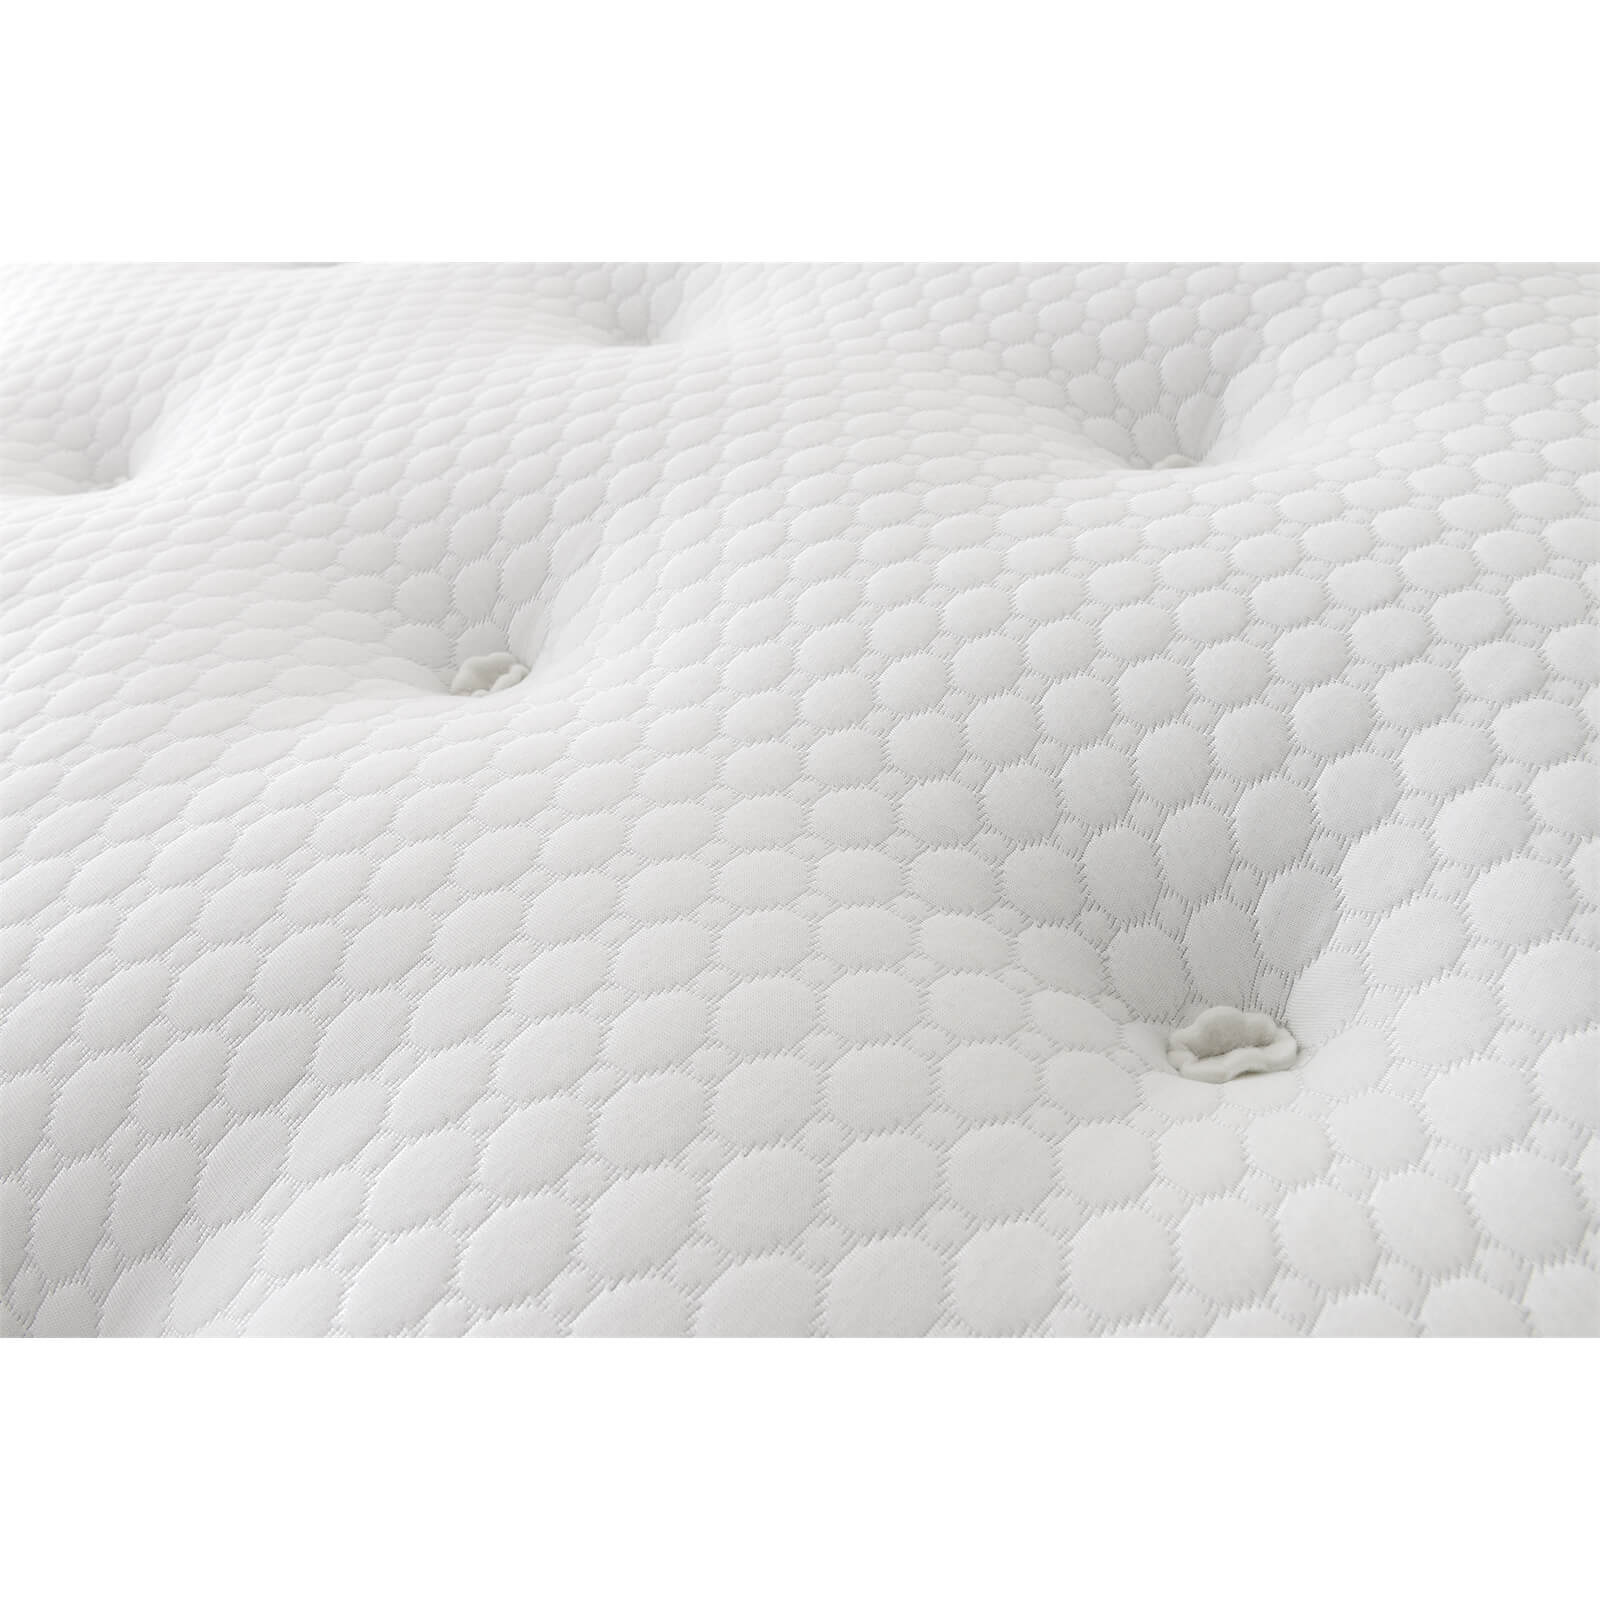 Silentnight Eco Comfort 1200 Pocket Divan Bed 4 Drawer - Slate Grey - King